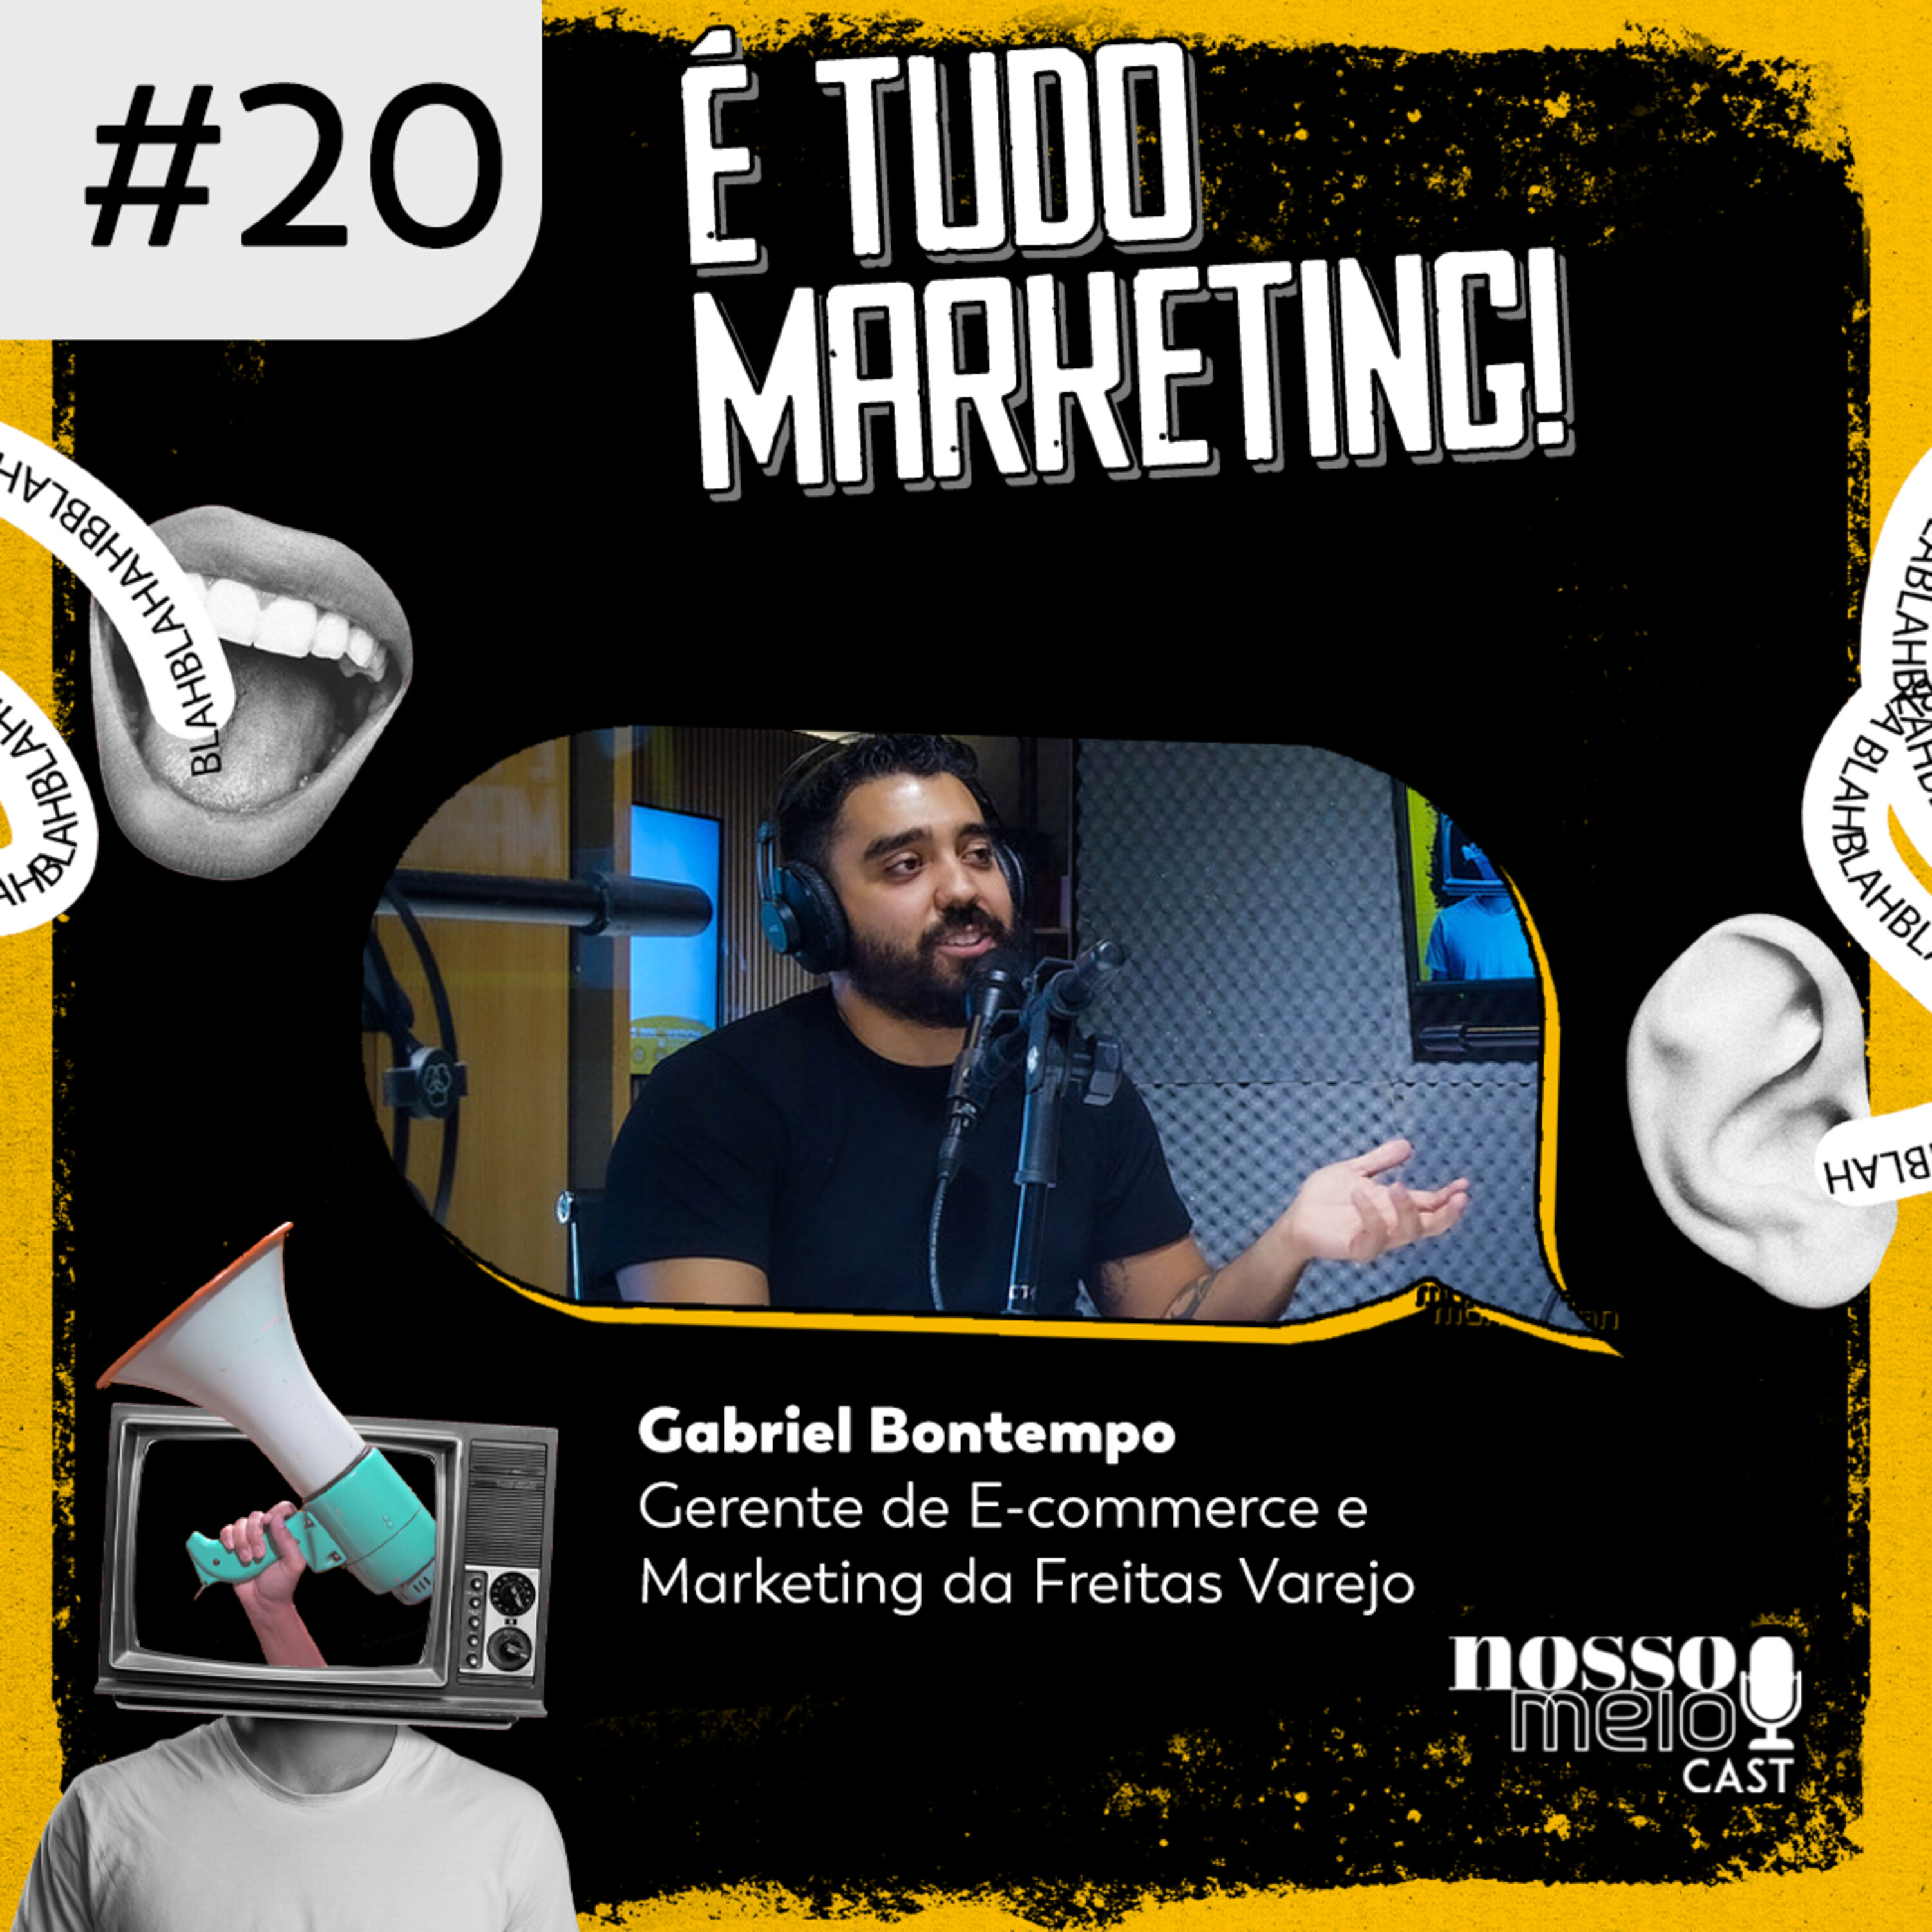 Nosso Meio Cast #20 - É tudo Marketing: o mundo conectado e o marketing